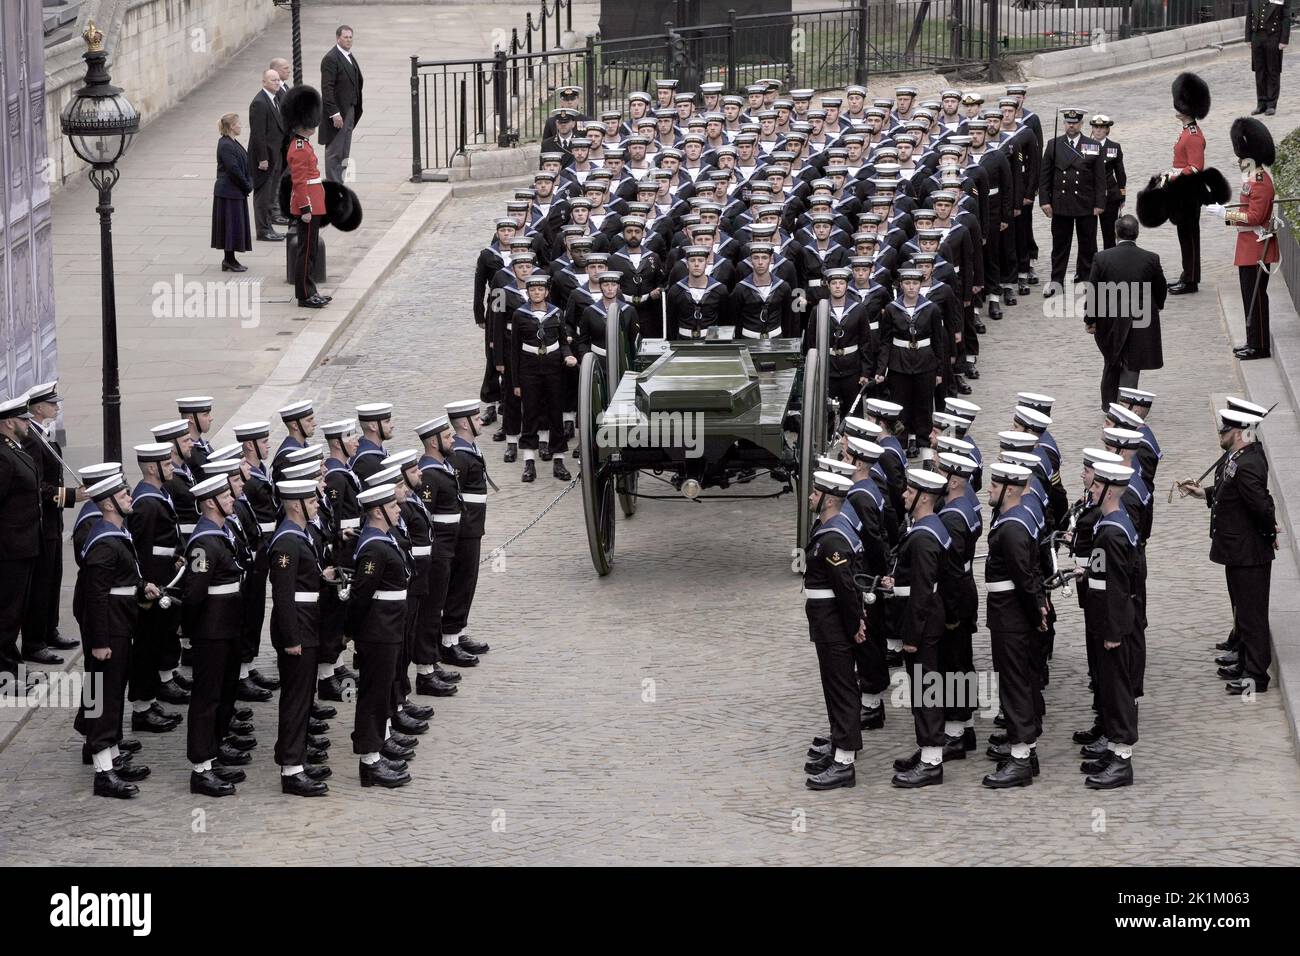 Ein Waffenwagen, der von Soldaten der Royal Navy vor der Westminster Hall gezogen wurde und bereit war, den Sarg von Königin Elizabeth II zu tragen, um von der Westminster Hall zum State Funeral zu gelangen, das in Westminster Abbey, London, abgehalten wird. Bilddatum: Montag, 19. September 2022. Stockfoto